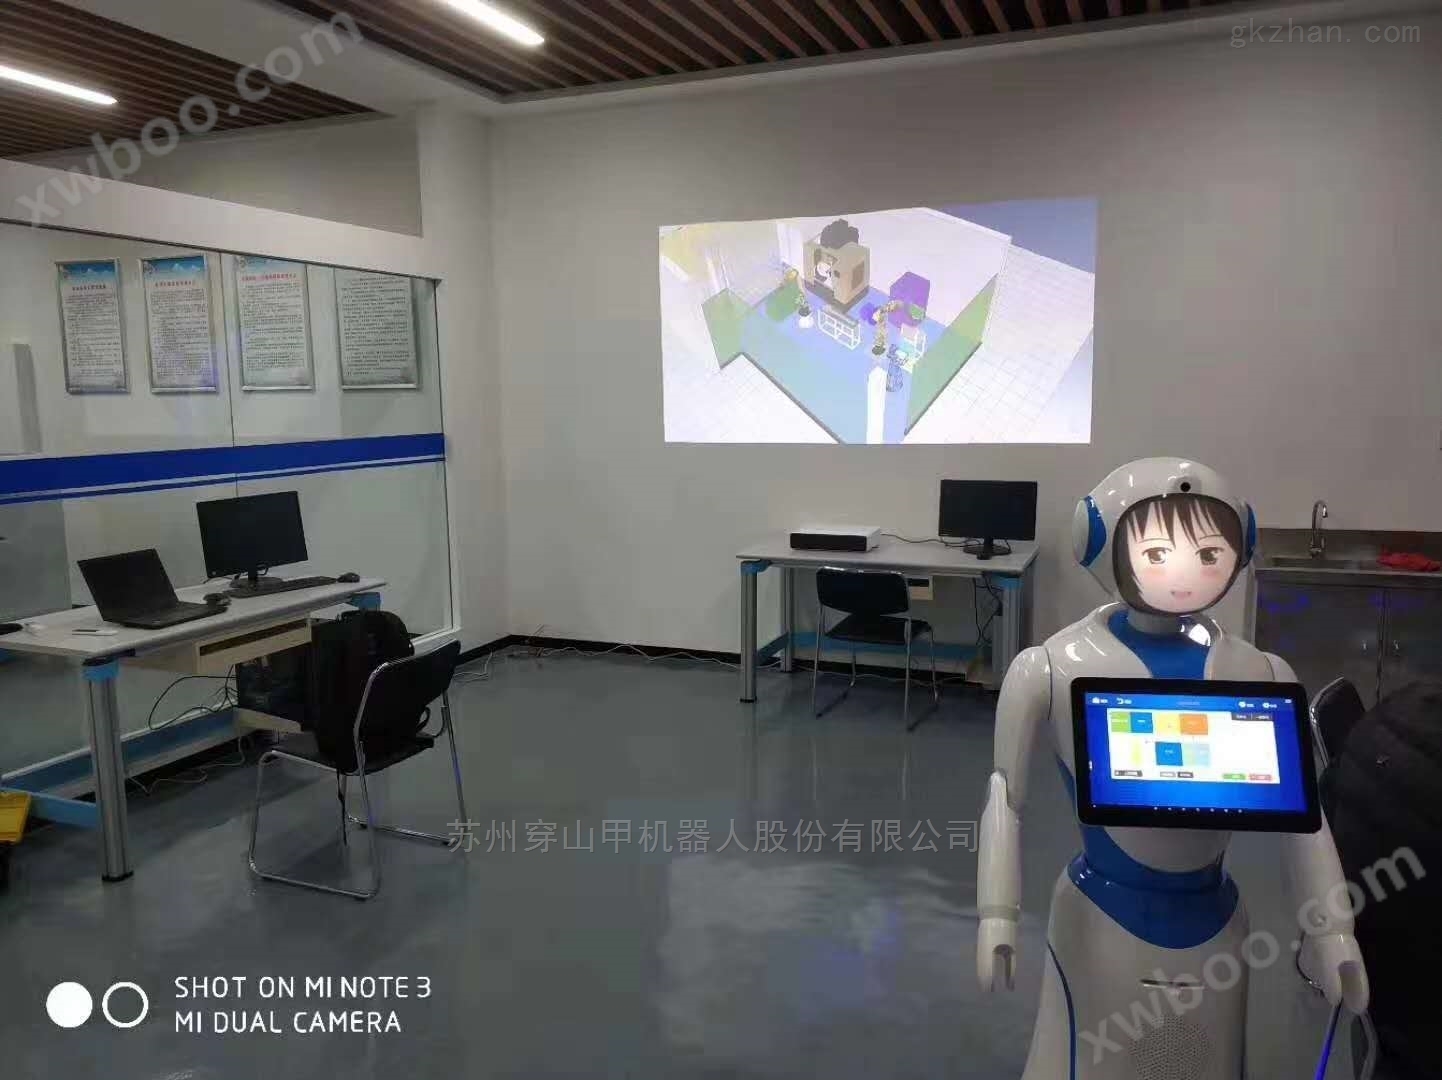 *北京市供用电科技馆展览讲解机器人